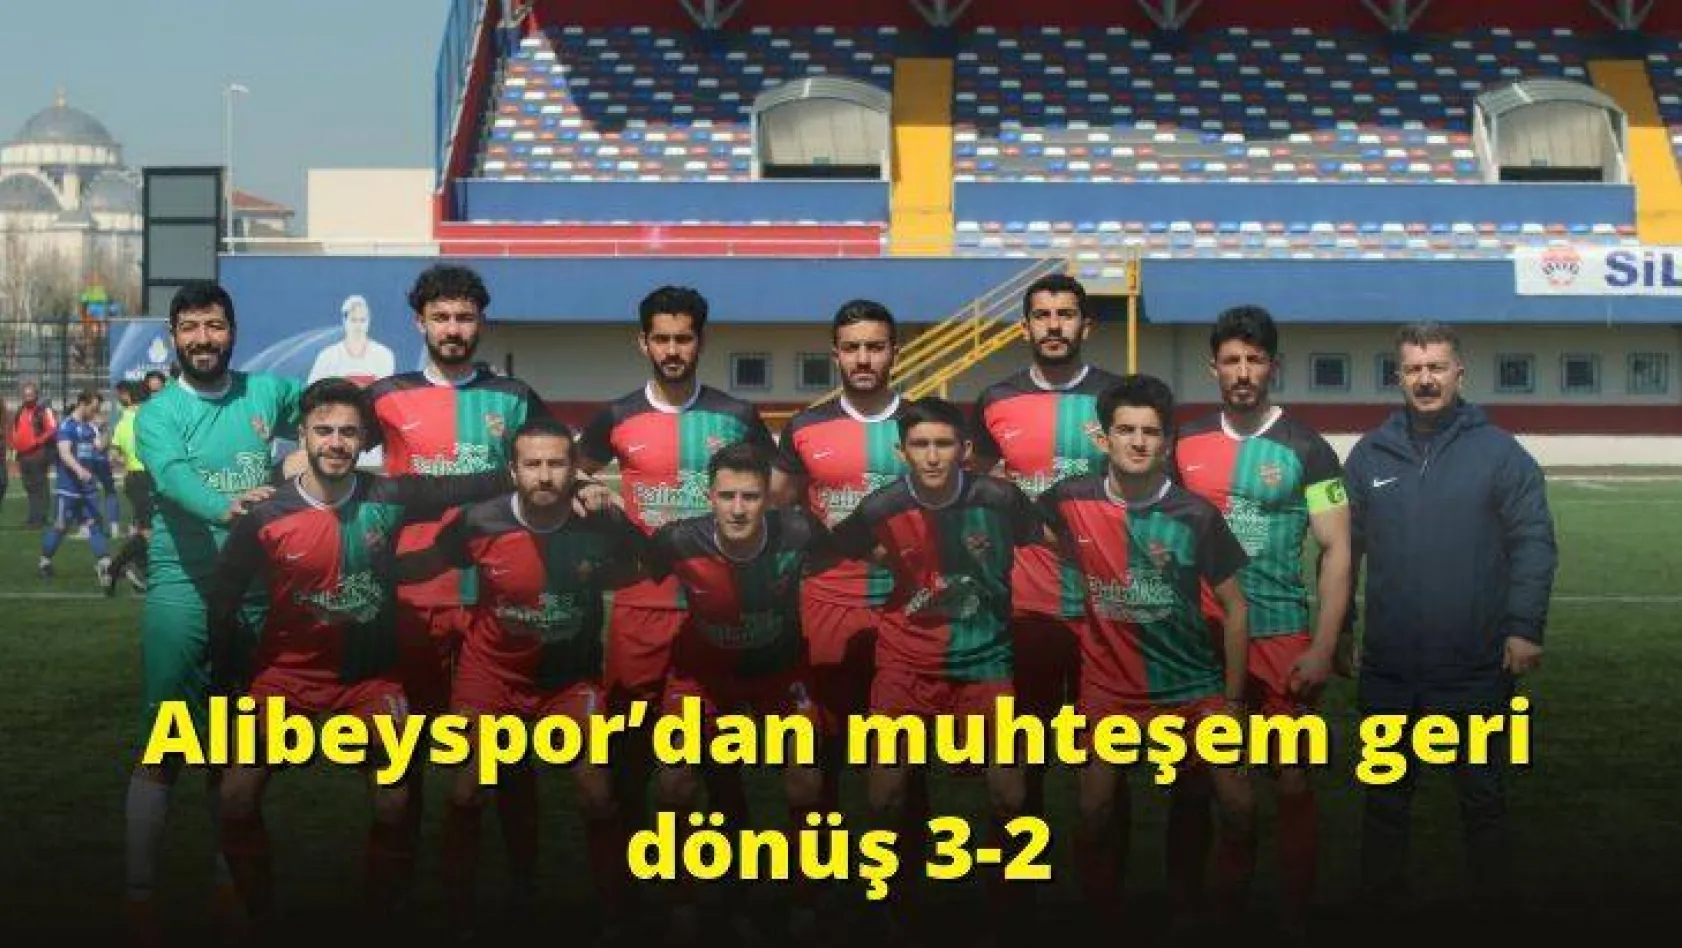 Alibeyspor'dan muhteşem geri dönüş 3-2